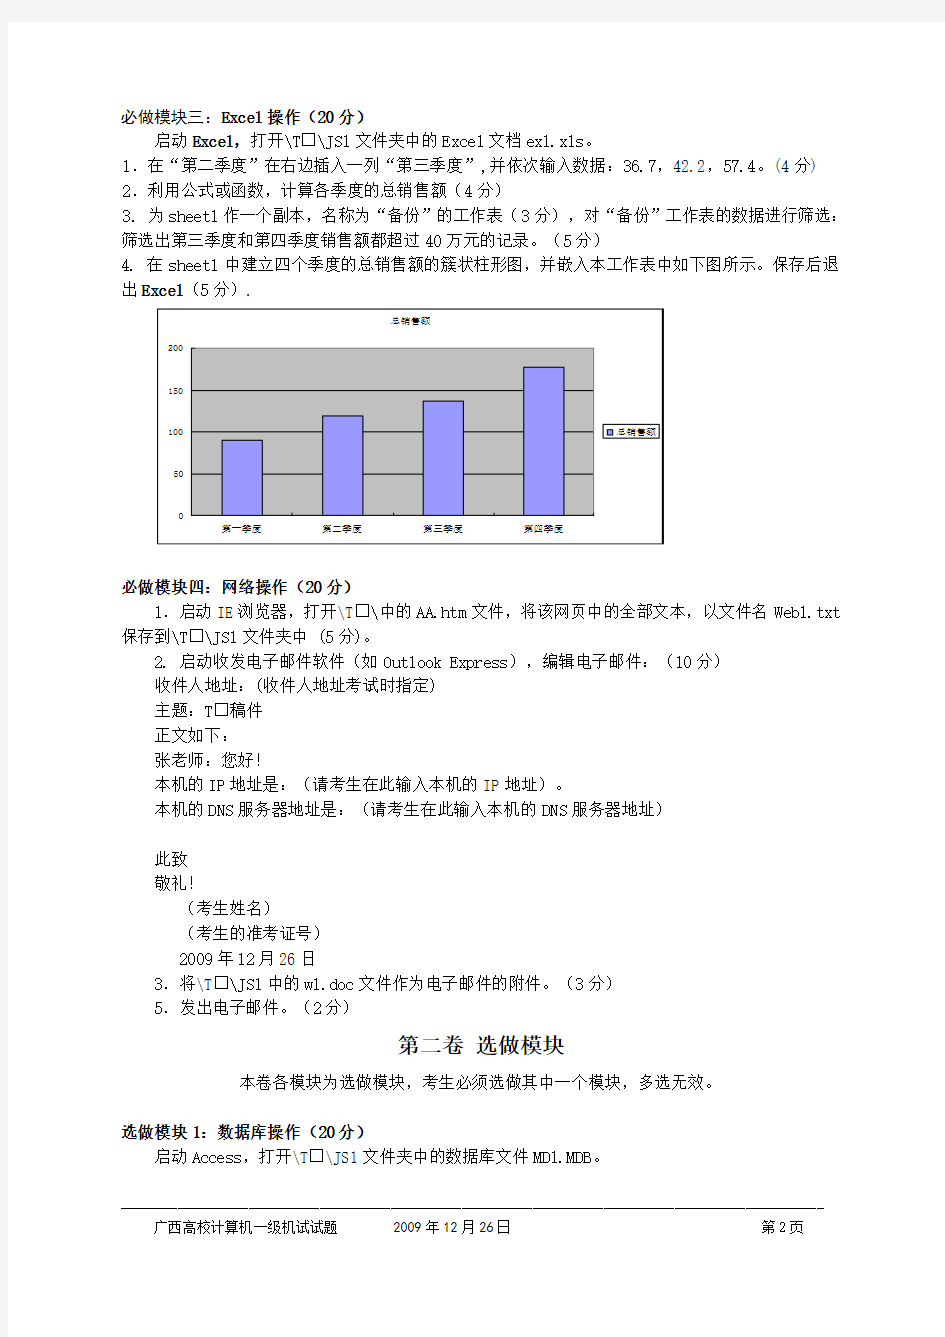 全国高校计算机等级考试(广西考区)一级机试试题(1)20091226